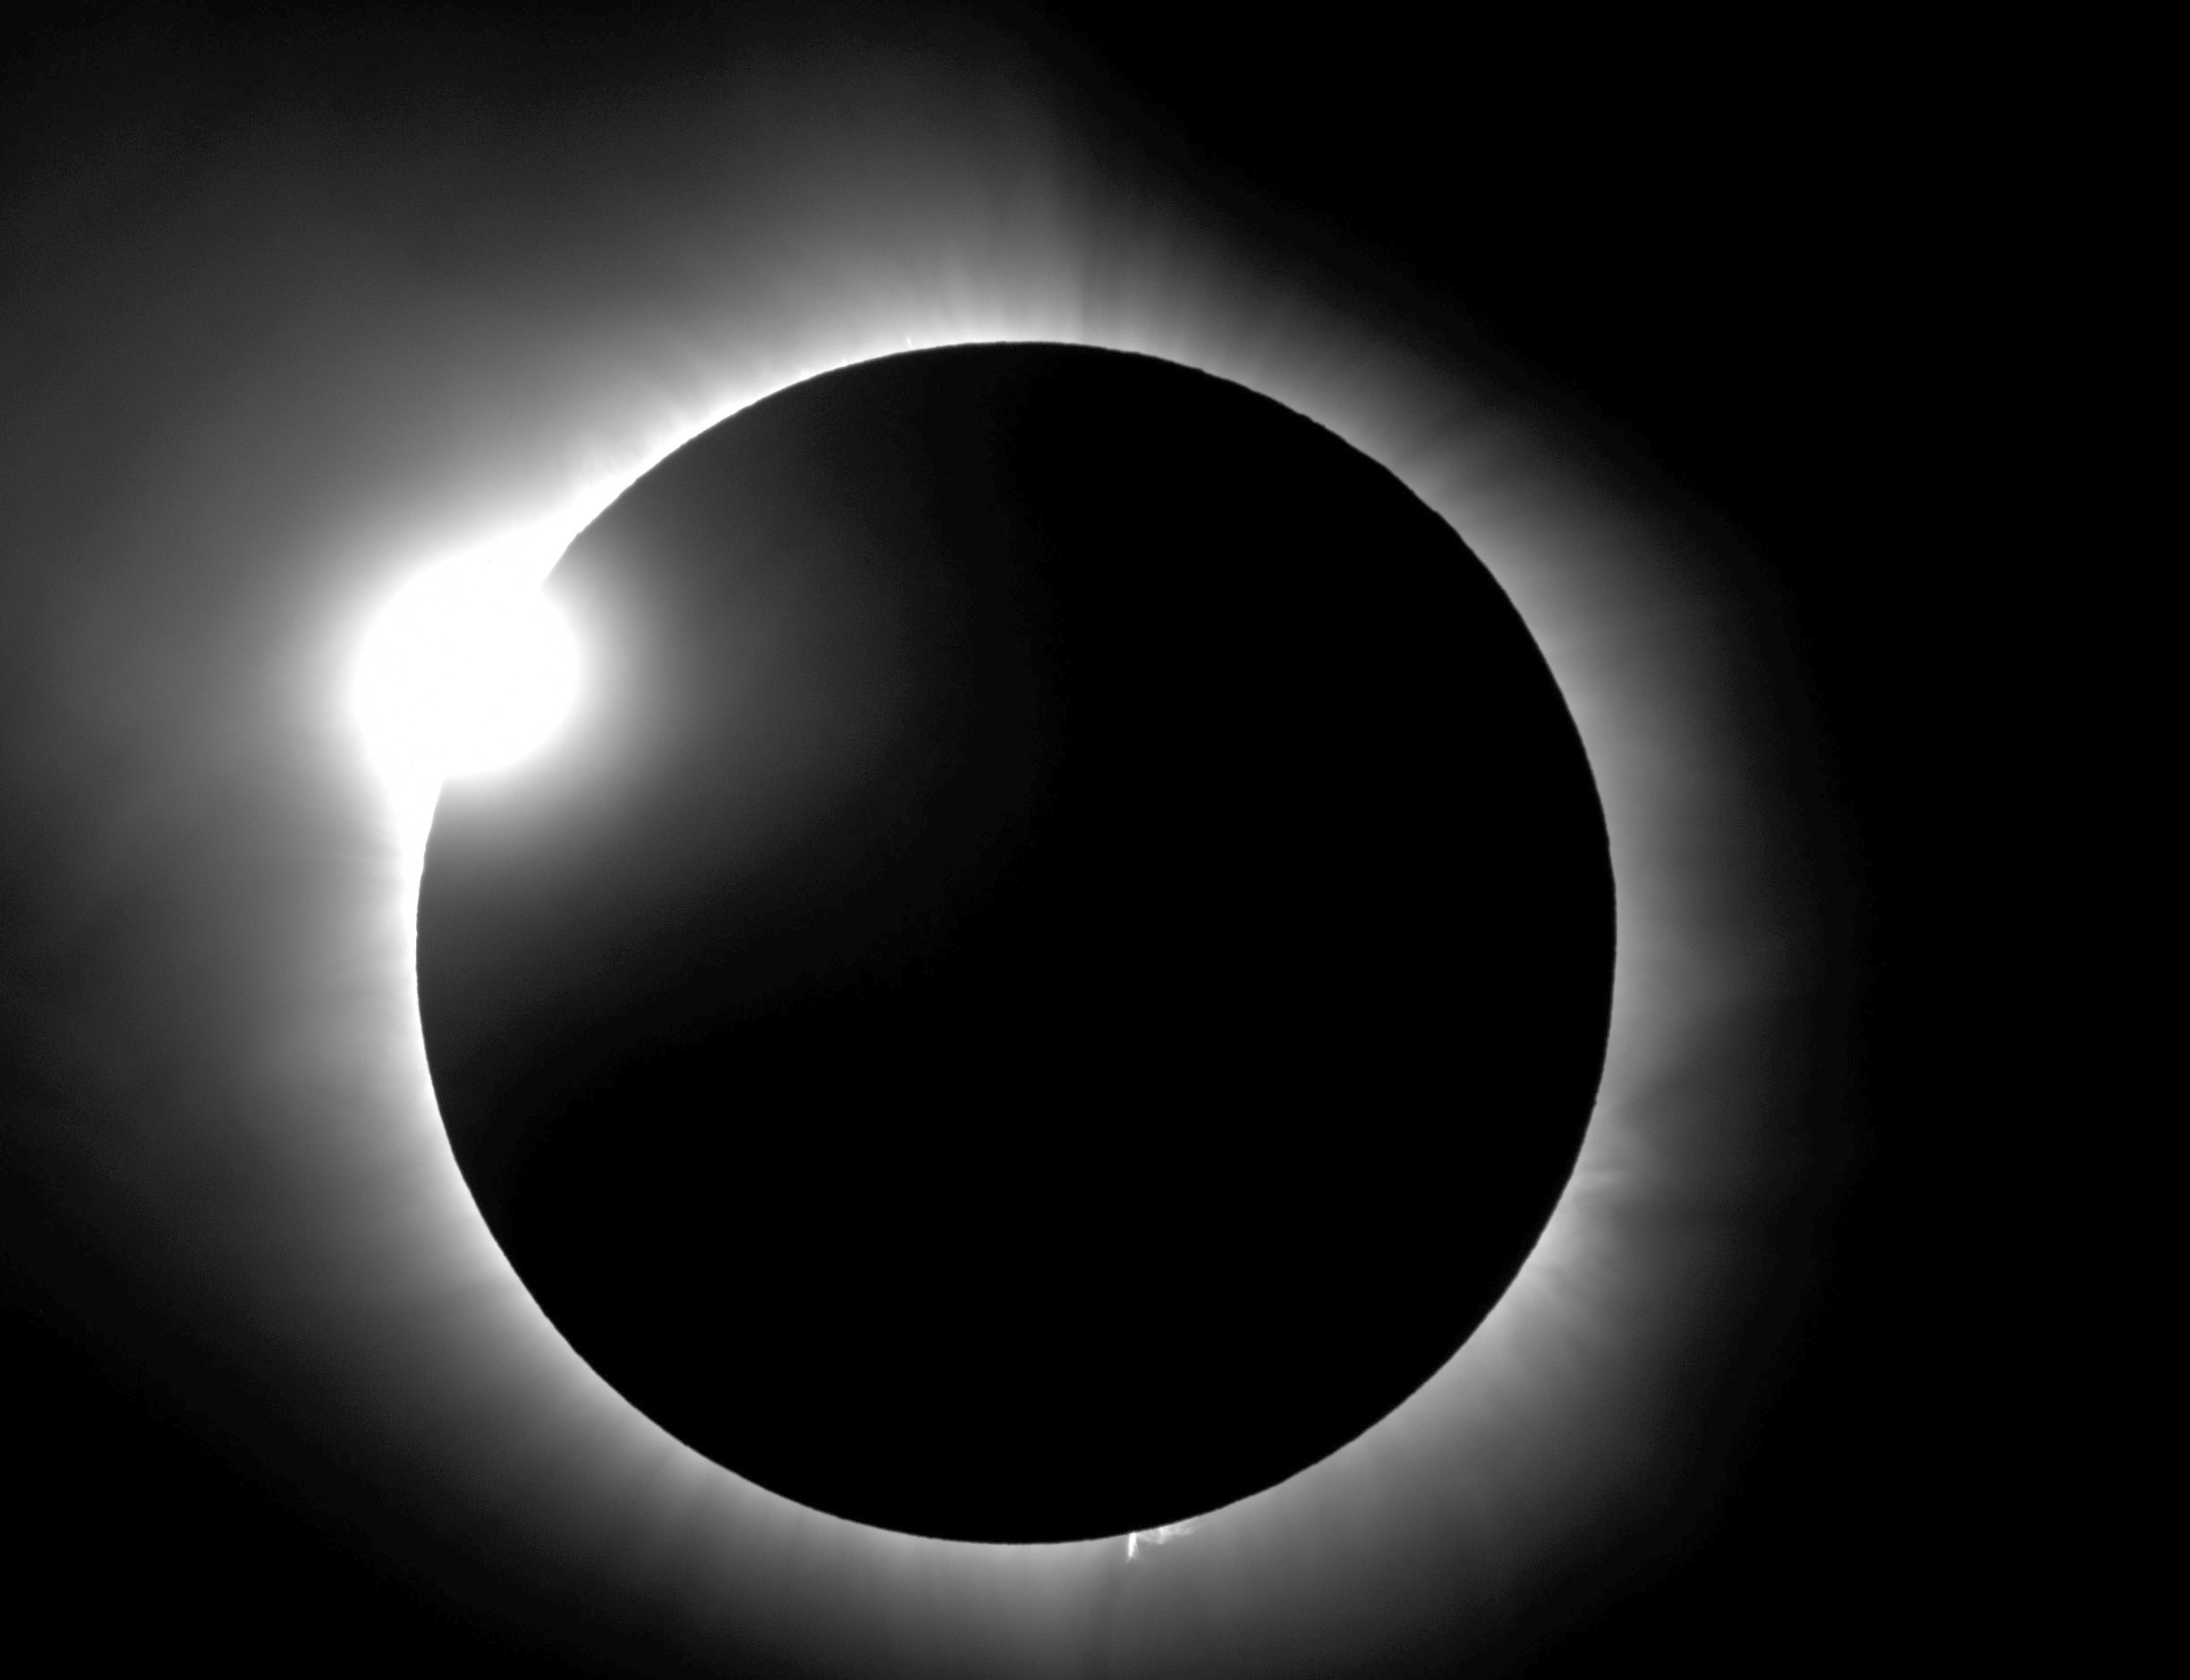 صورة تظهر كسوف «خاتم الماس»، وهو كسوف كلي للشمس حصل في 2016